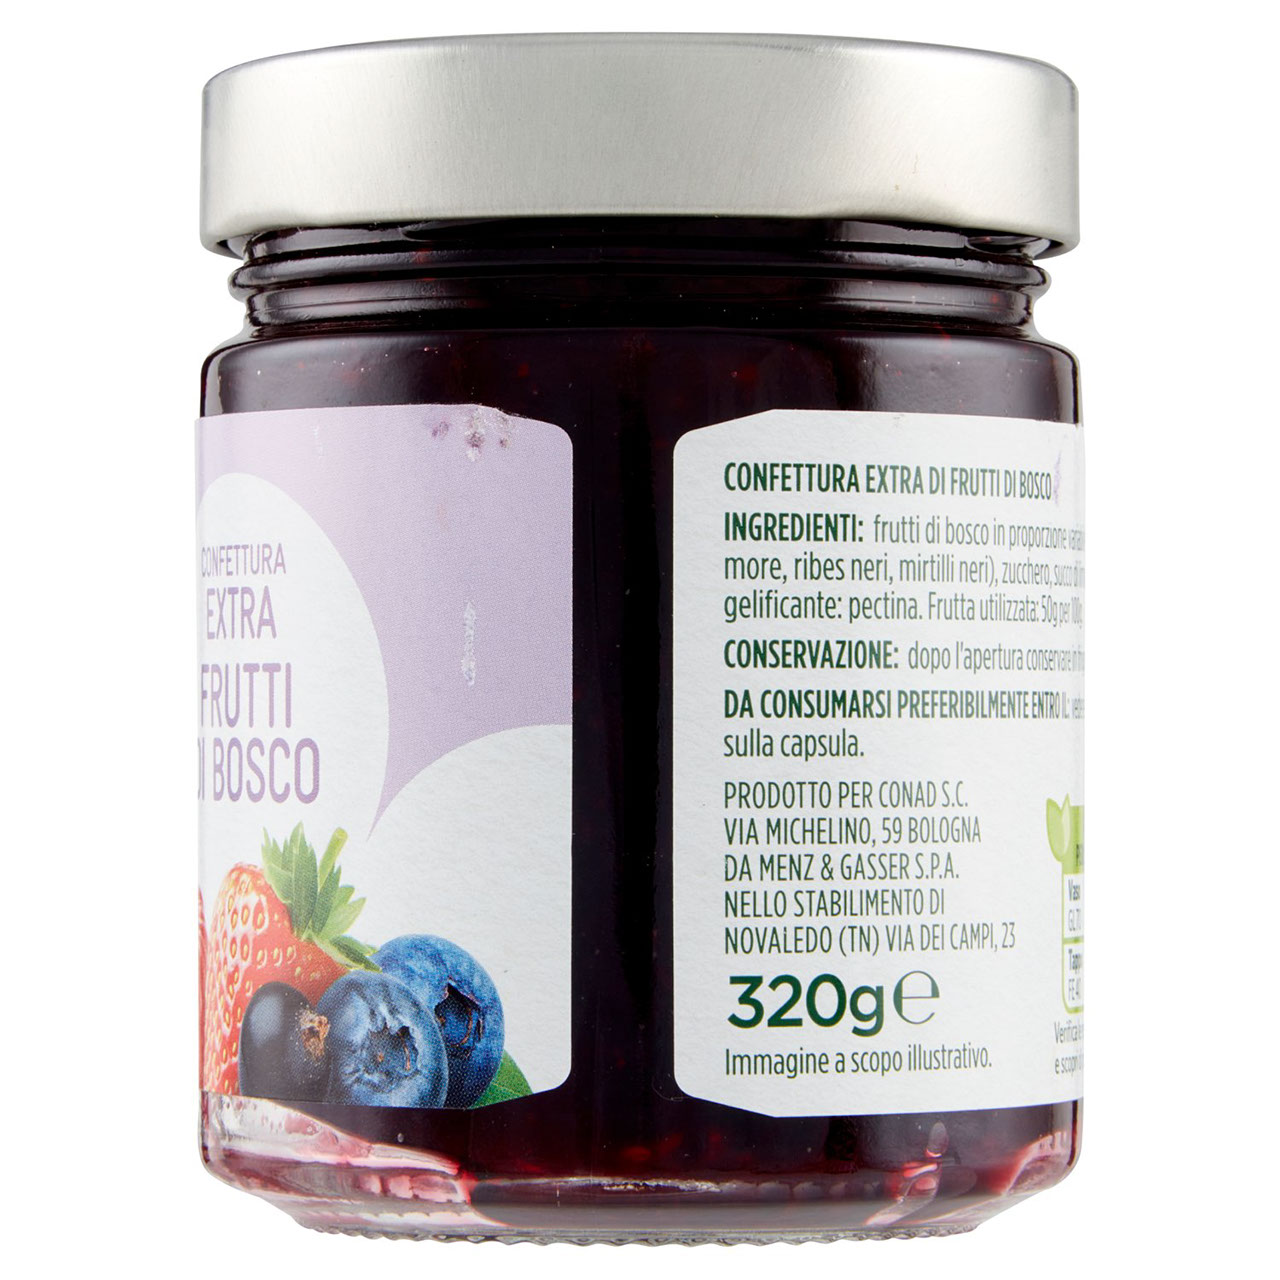 Confettura extra Frutti di Bosco g 320 Conad